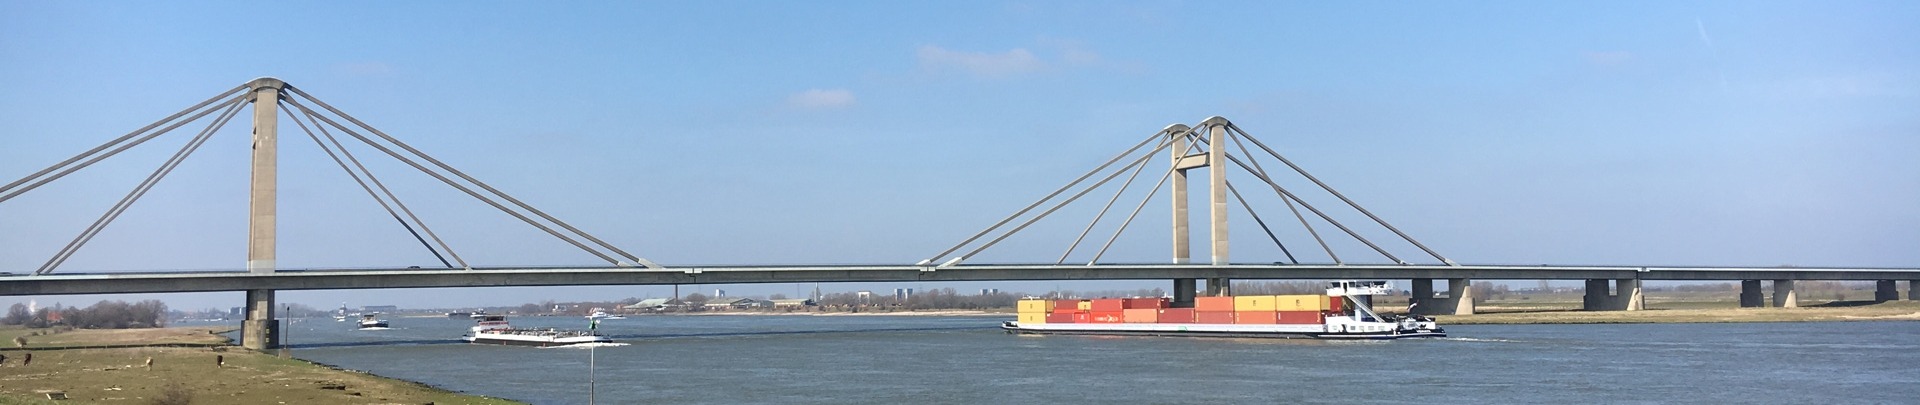 De PWA-brug met op de voorgrond de Waal en een schip